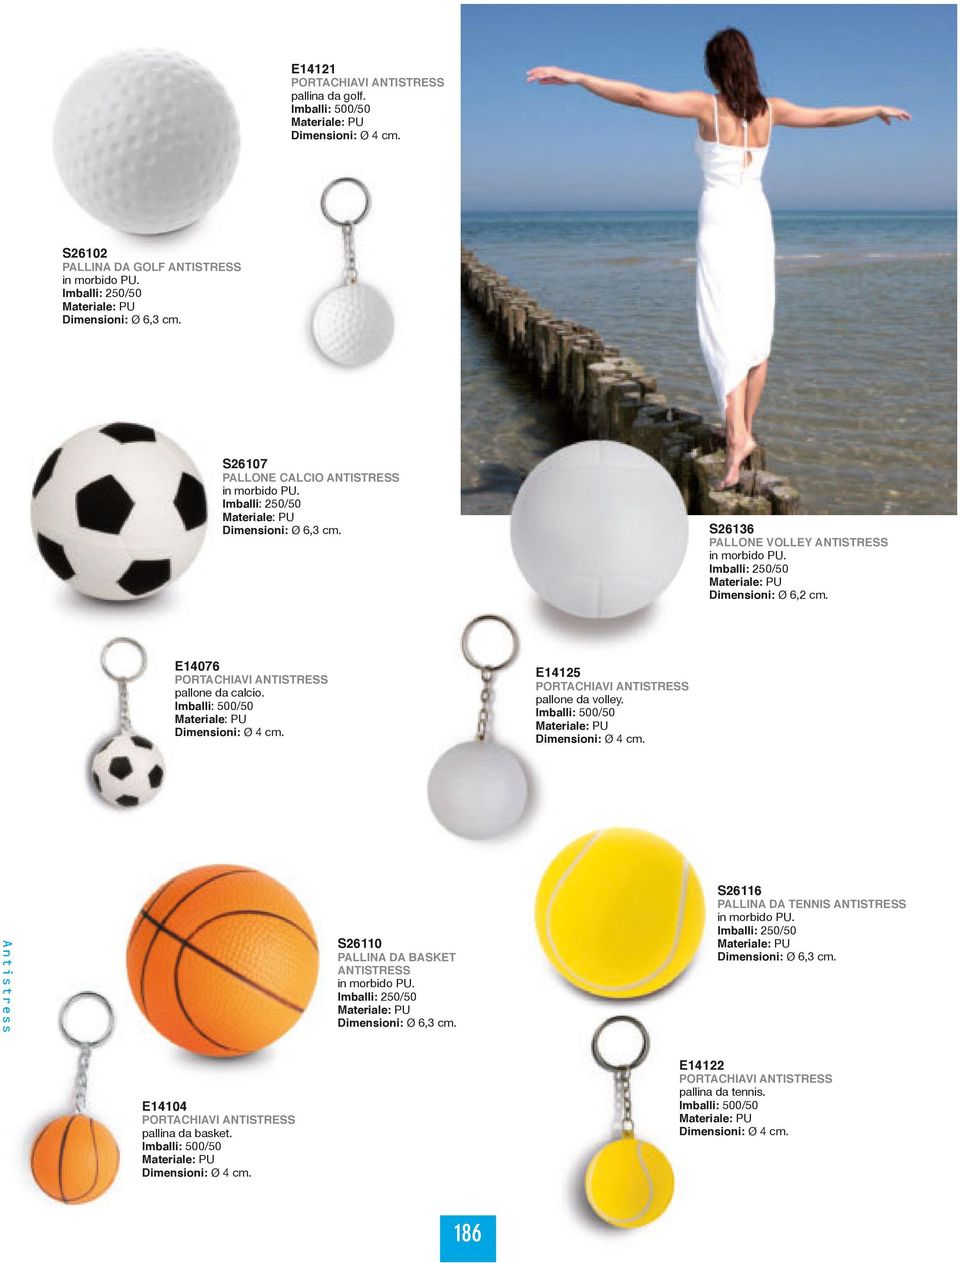 Imballi: 500/50 Dimensioni: Ø 4 cm. E14125 PORTACHIAVI ANTISTRESS pallone da volley. Imballi: 500/50 Dimensioni: Ø 4 cm.